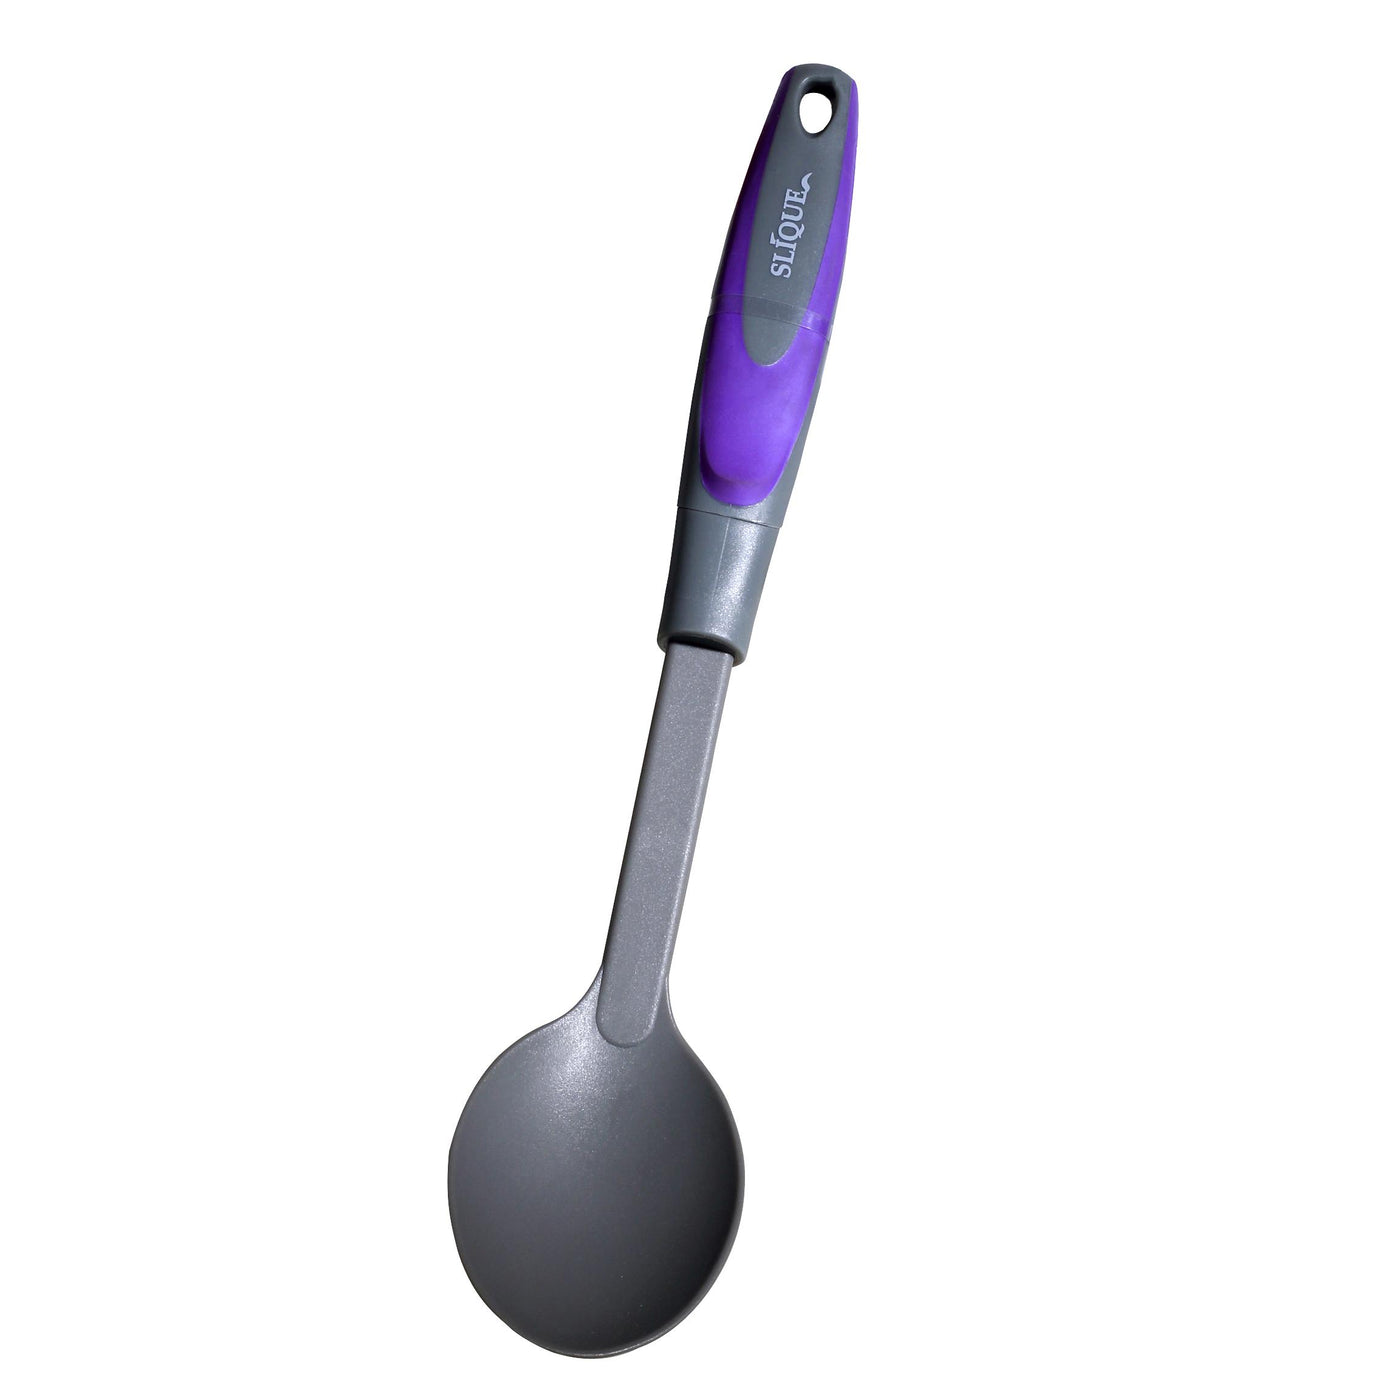 SLIQUE Premium Nylon Spoon (Purple)